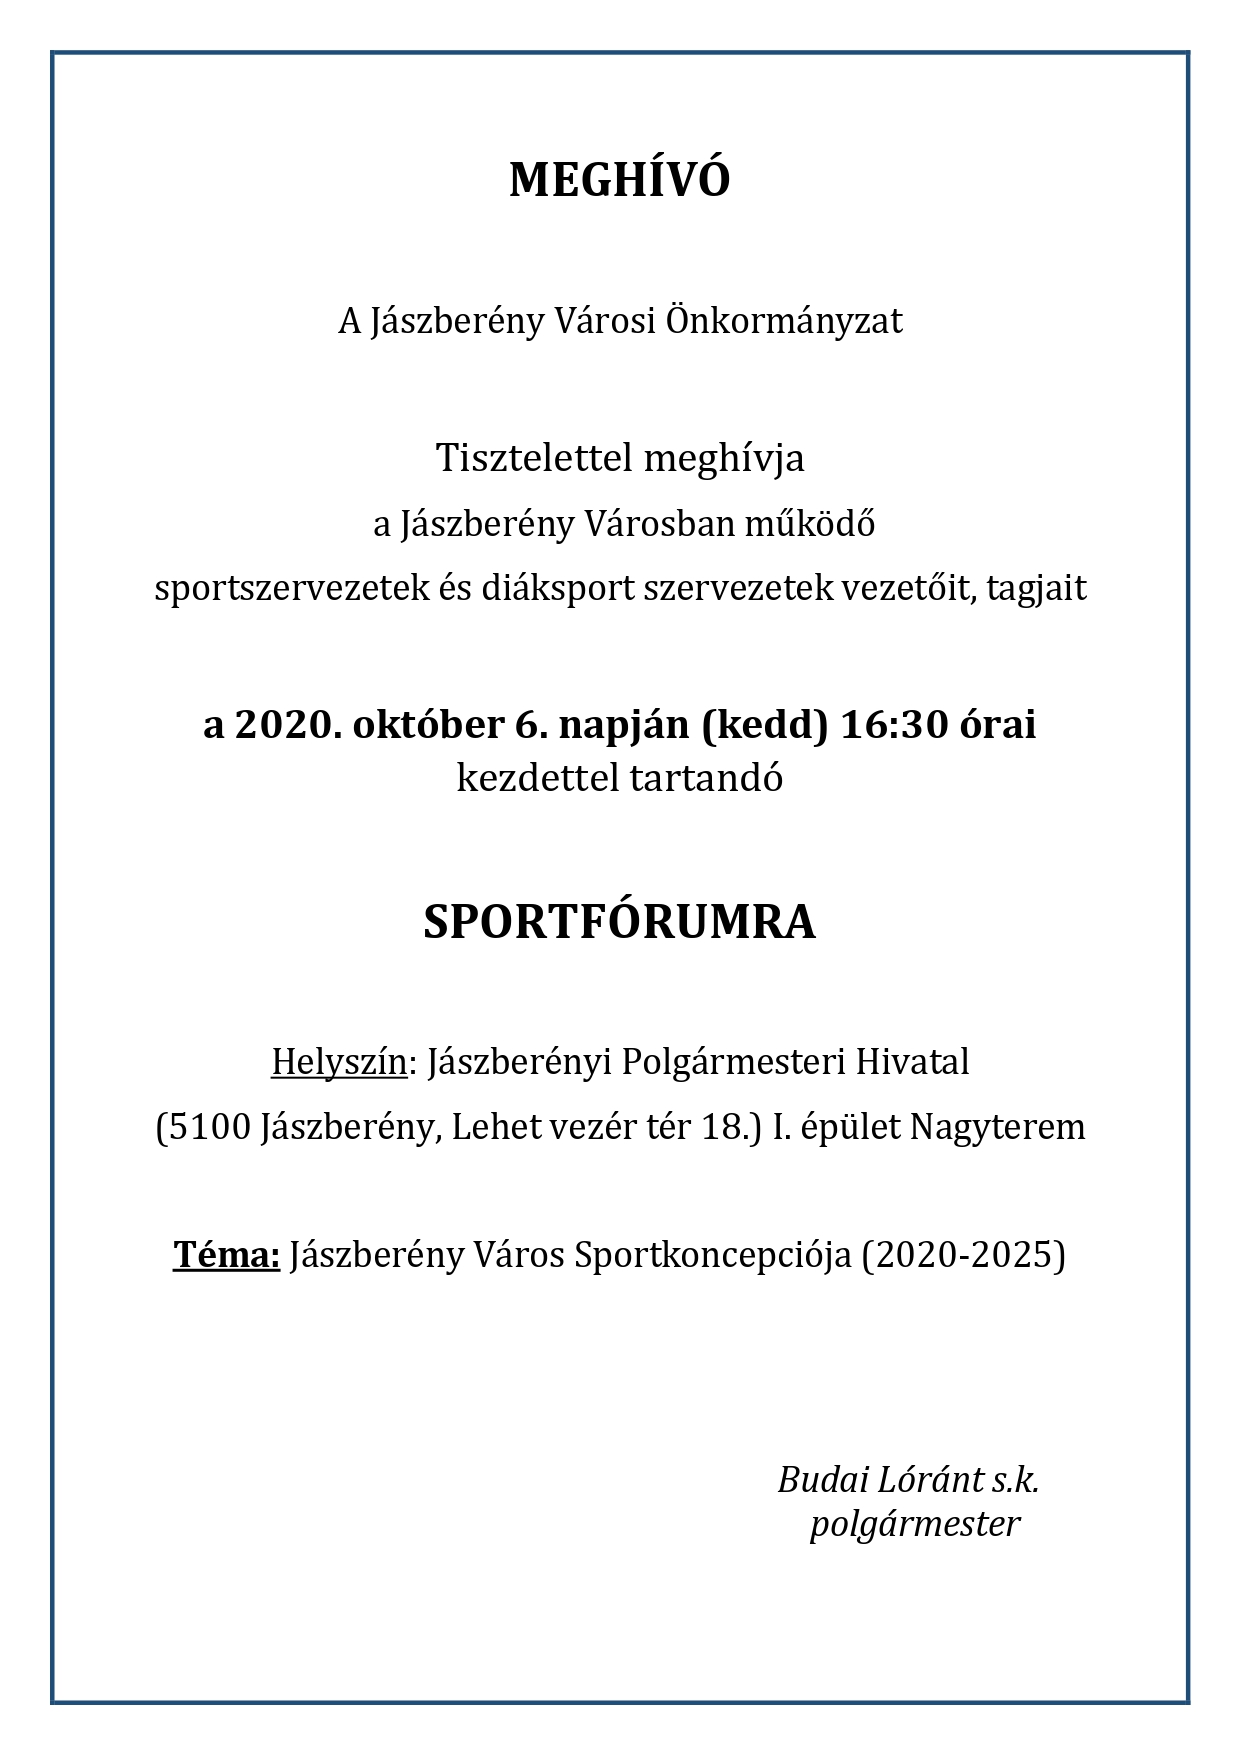 meghivo_sportforum_20201006_page 0001